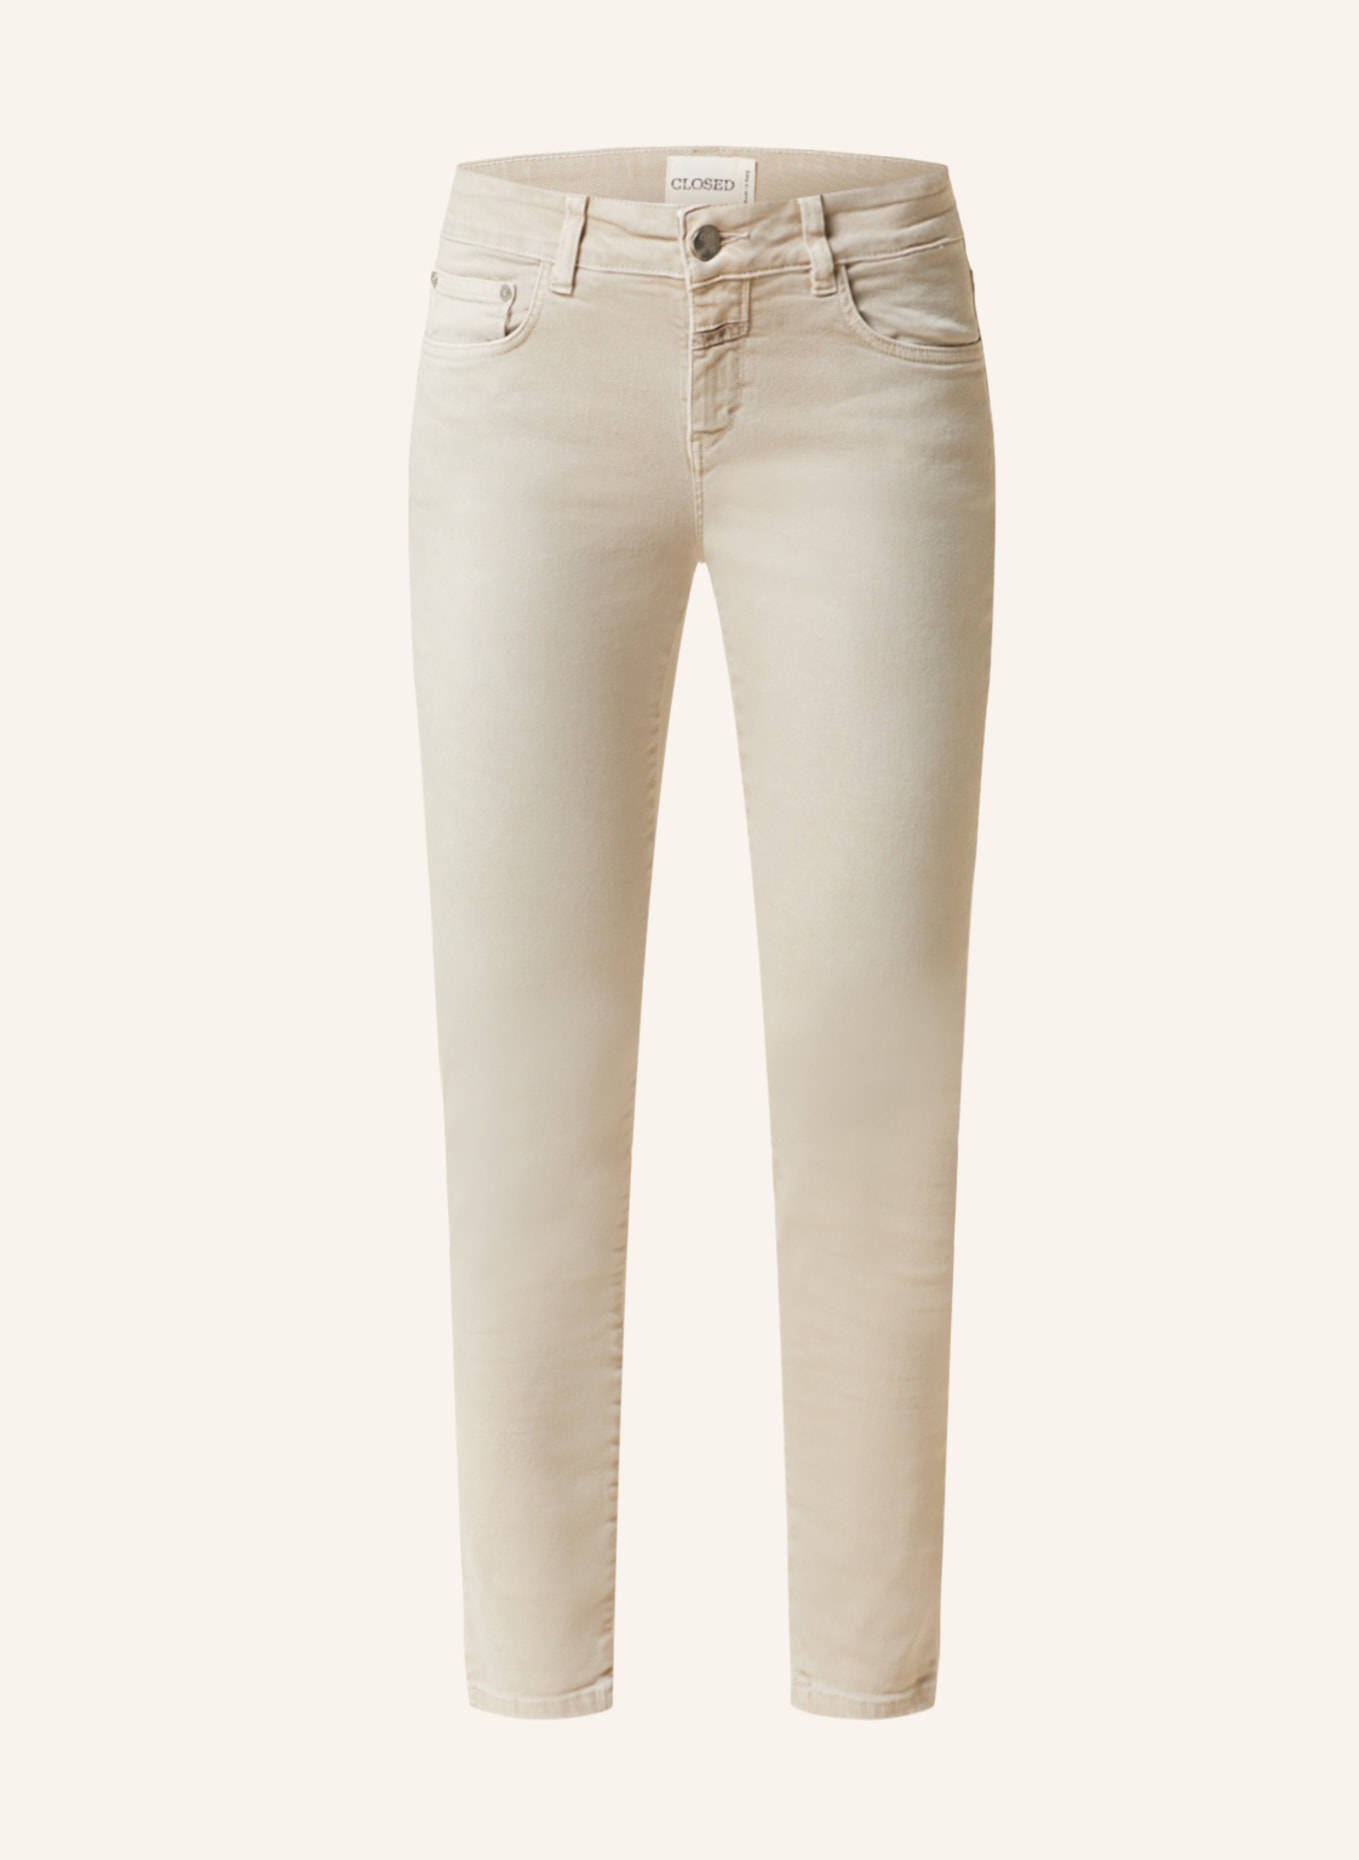 CLOSED Skinny jeans BAKER , Color: 943 PLASTER BEIGE (Image 1)